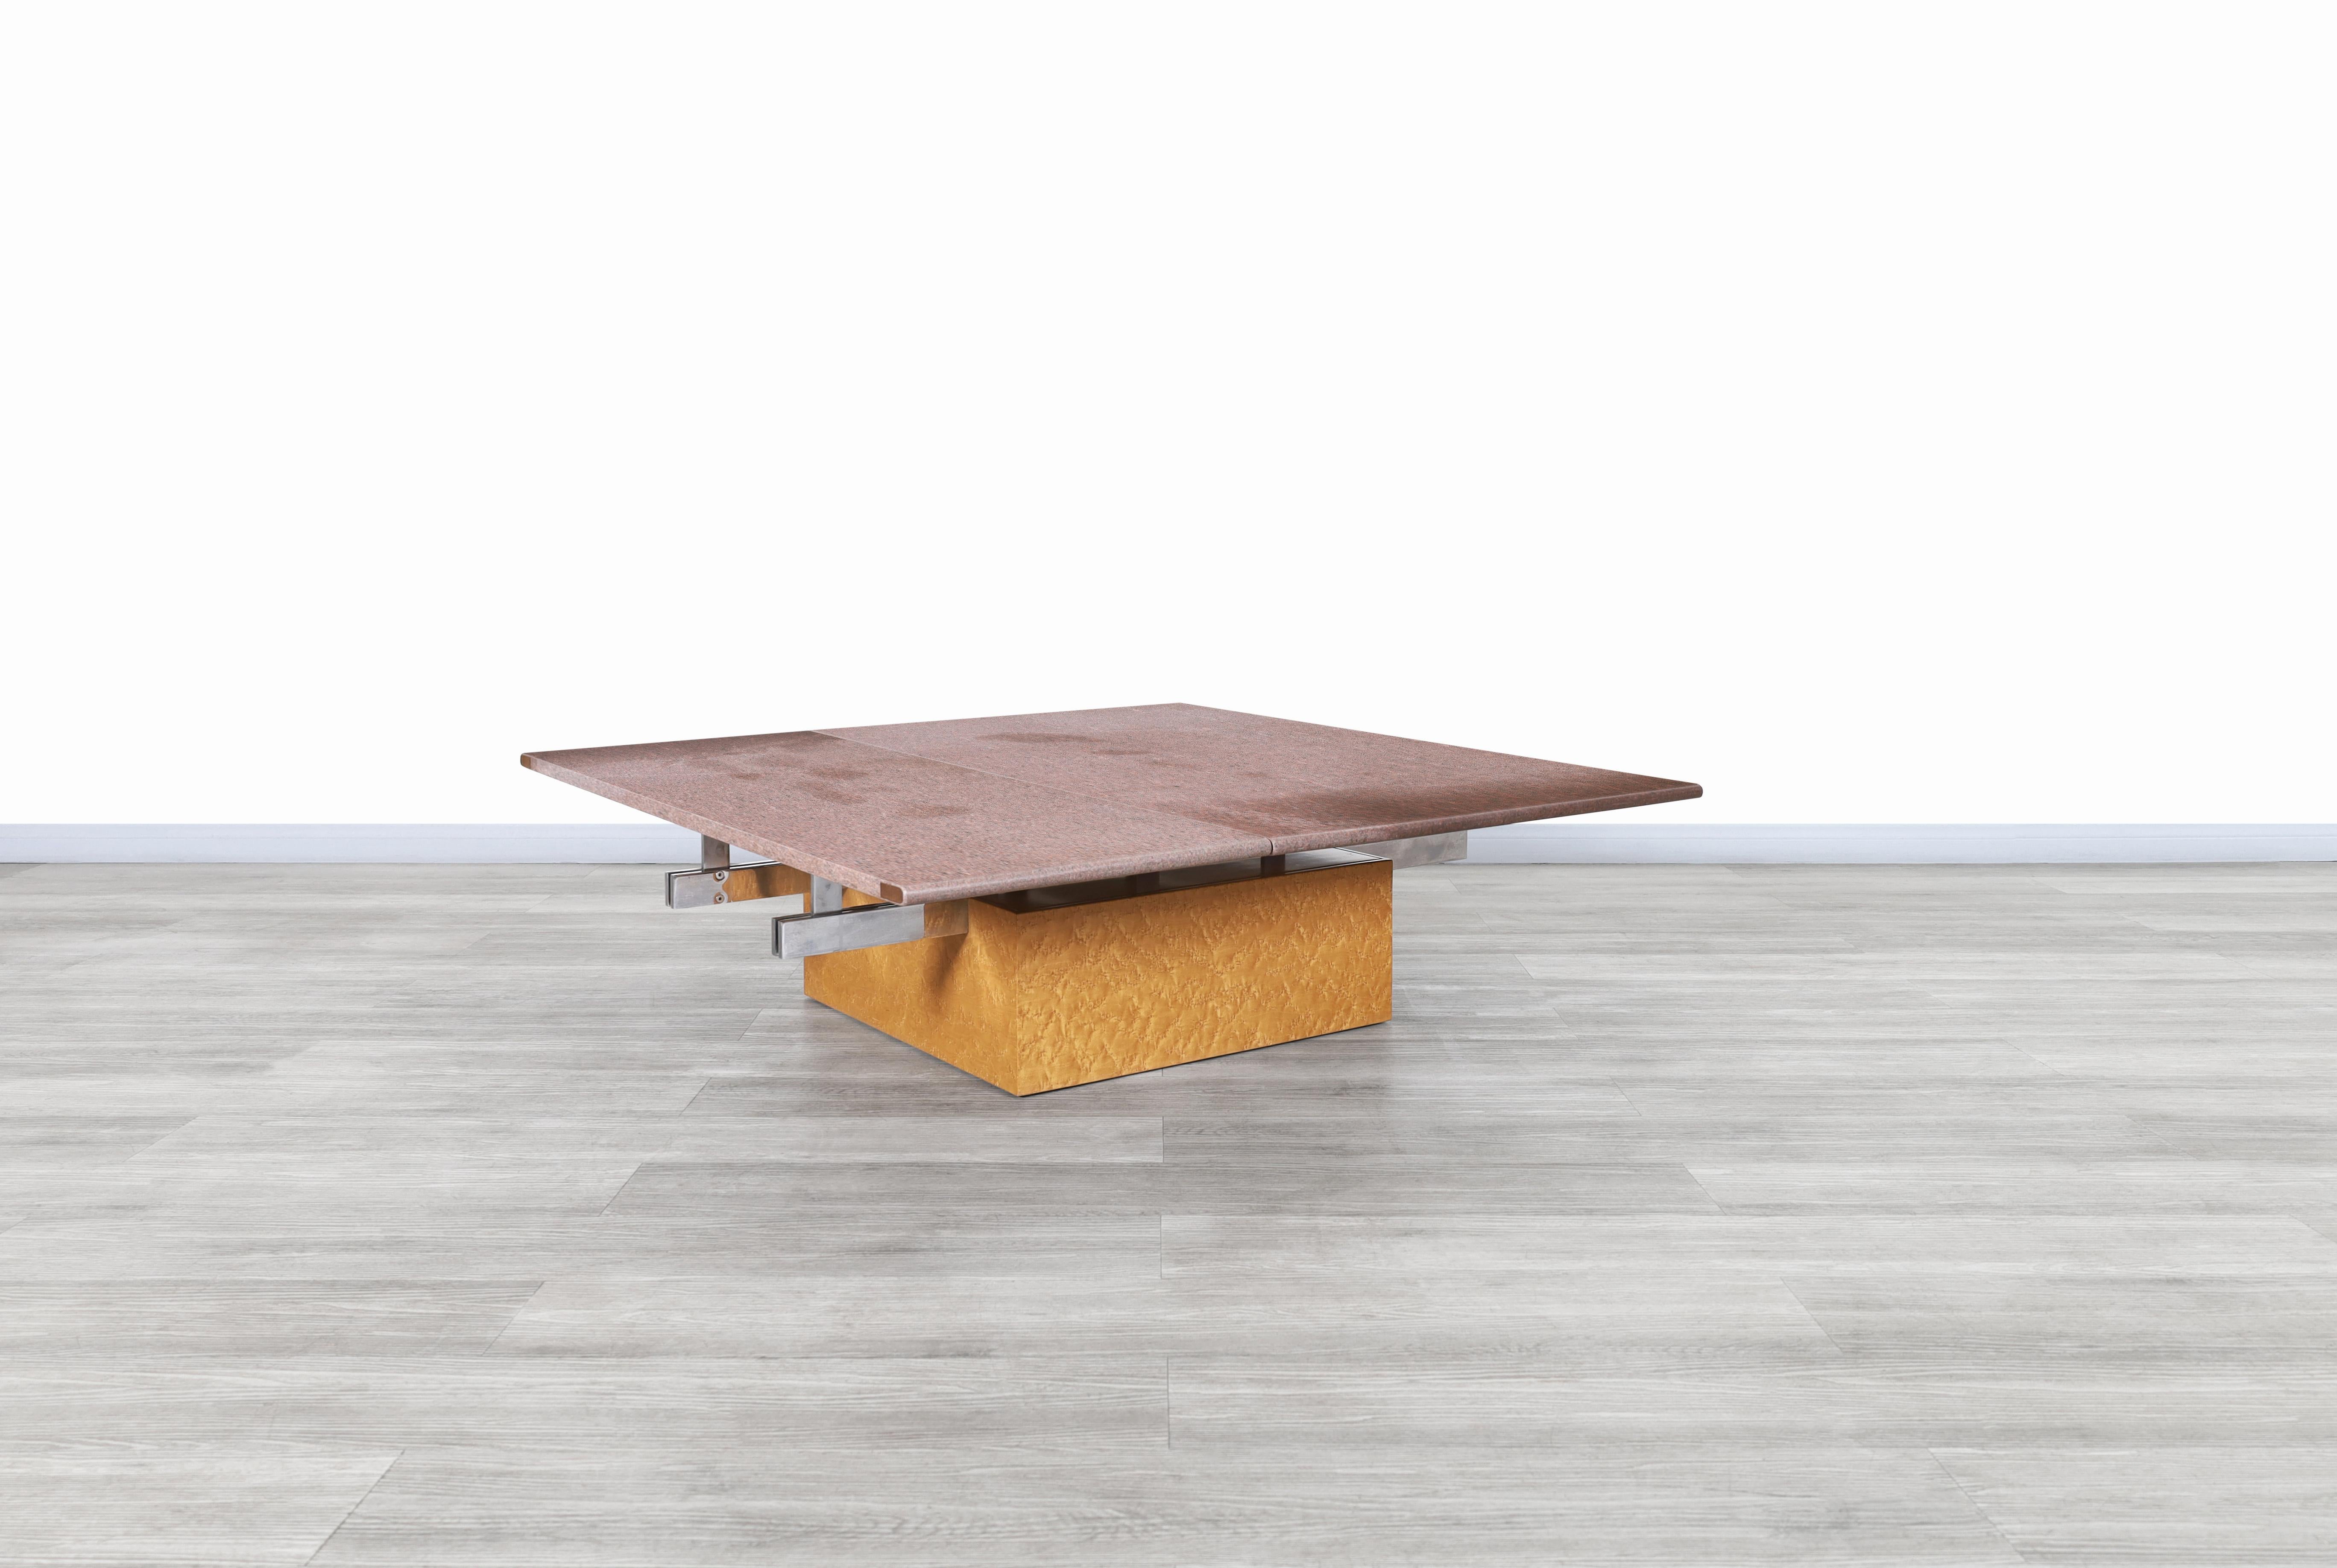 Superbe table basse italienne vintage réglable en érable et granit, conçue par Giovanni Offredi pour Saporiti en Italie, vers les années 1980. Cette table a un design fascinant, où les matériaux utilisés dans sa construction se démarquent, combinés